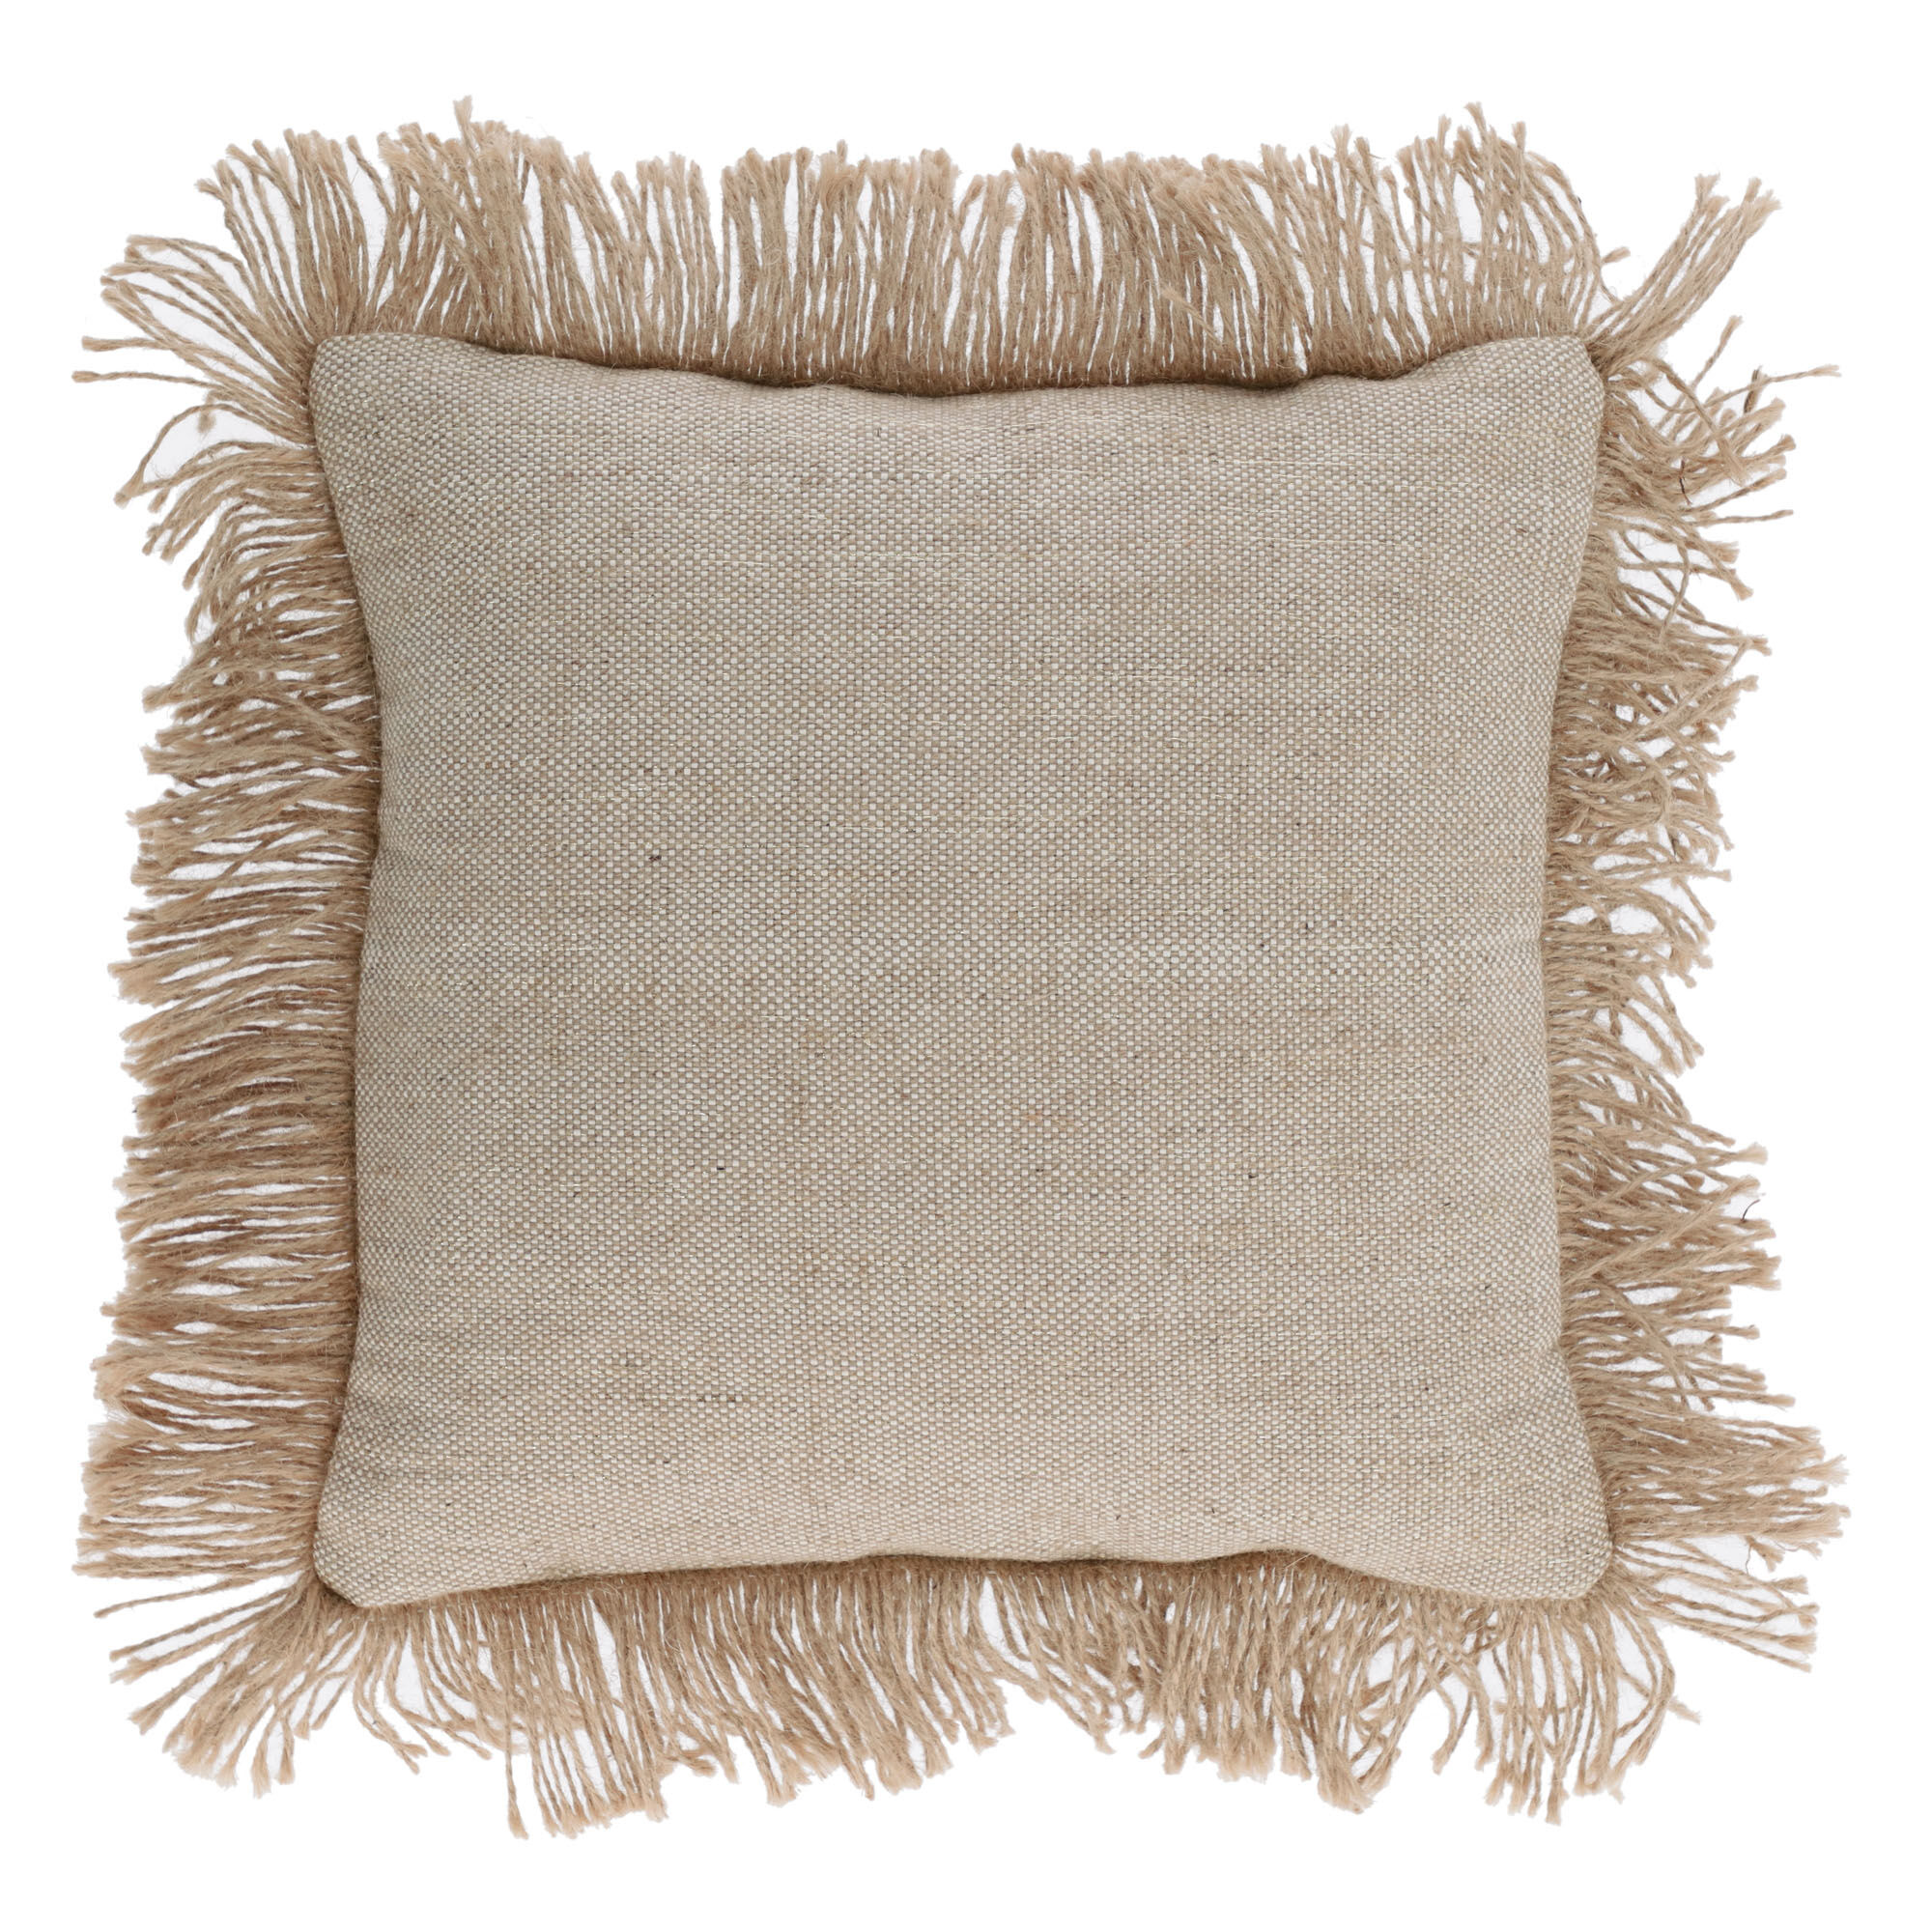 Kave Home Fodera per cuscino Delcie in cotone beige con frange in juta, 45 x 45 cm